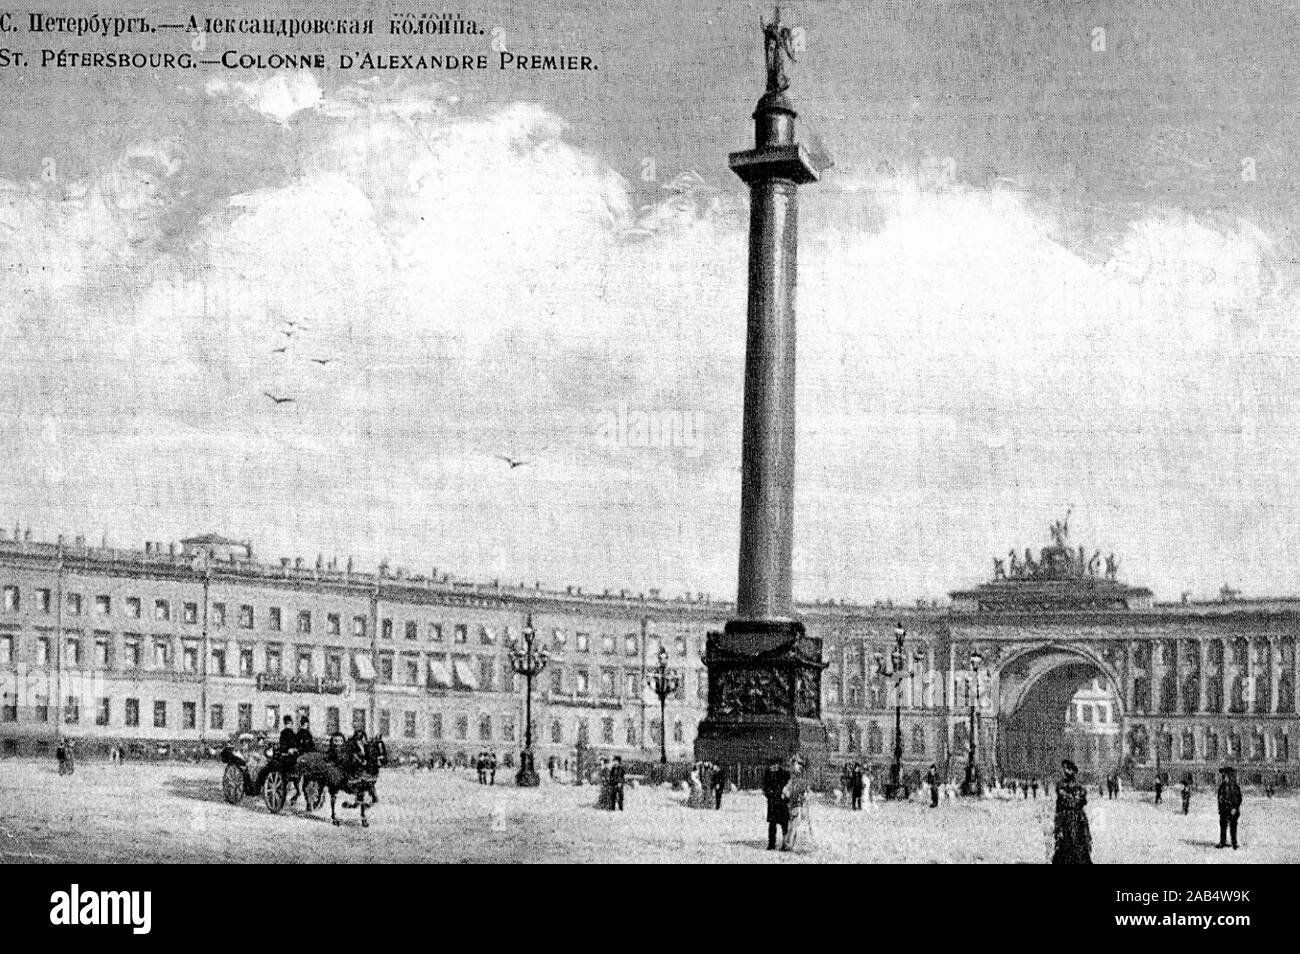 Historische postacard. St. Petersburg, Russland, 1901 Stockfoto